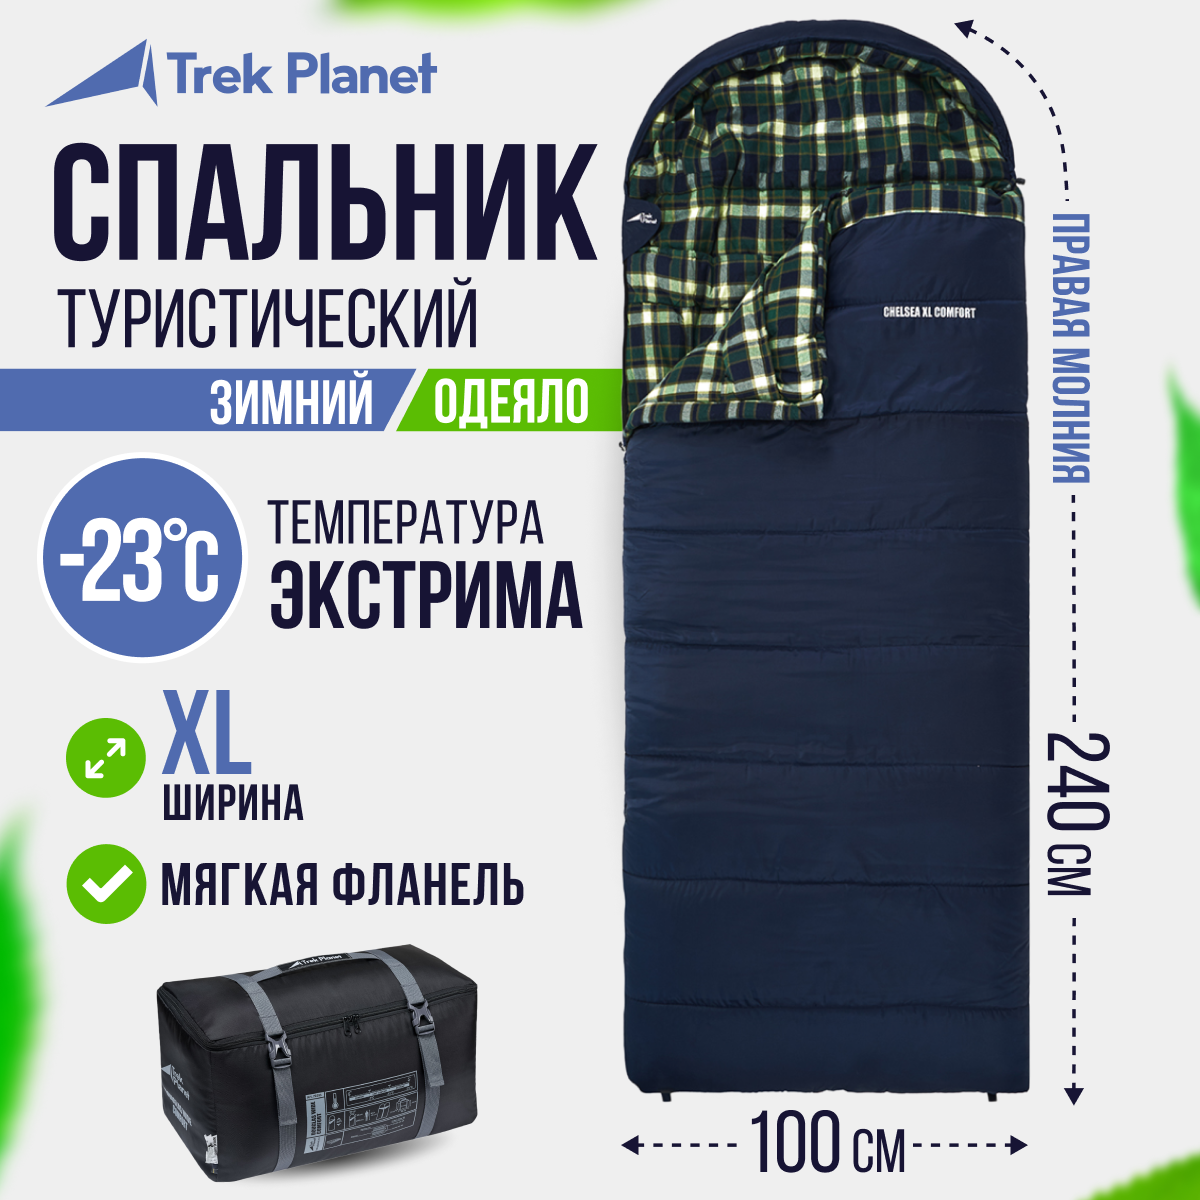 90270143 Спальный мешок Chelsea XL Comfort, зимний широкий с фланелью, правая молния, цвет синий, размер 240х100 см STLM-0159617 TREK PLANET